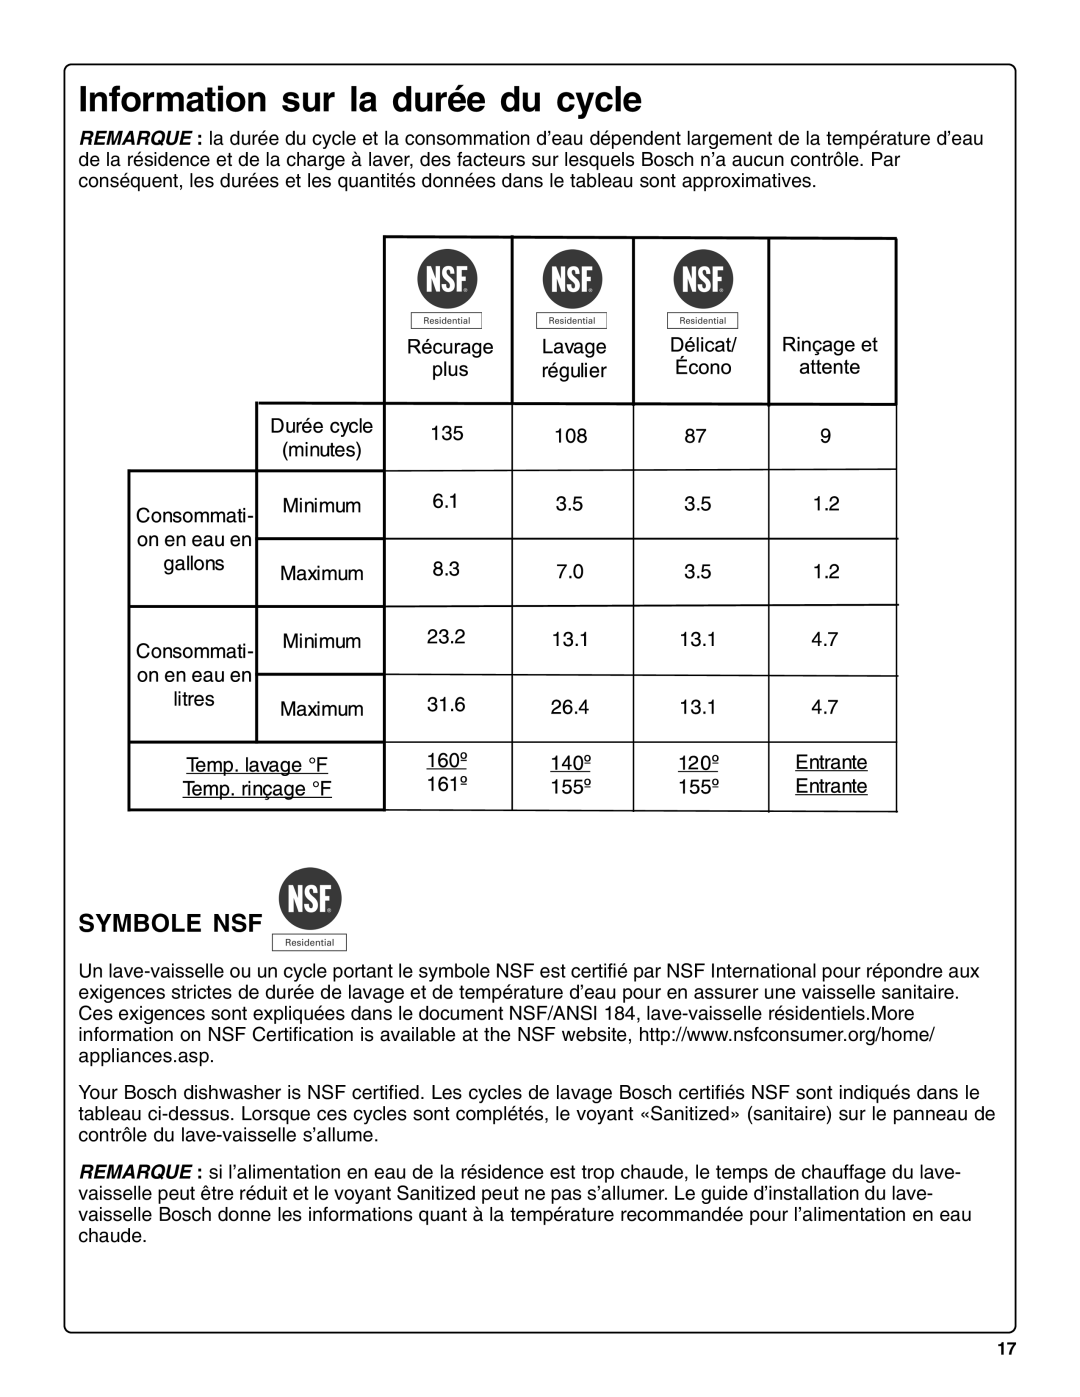 Bosch Appliances sHe43C installation instructions Information sur la durée du cycle, Symbole Nsf 